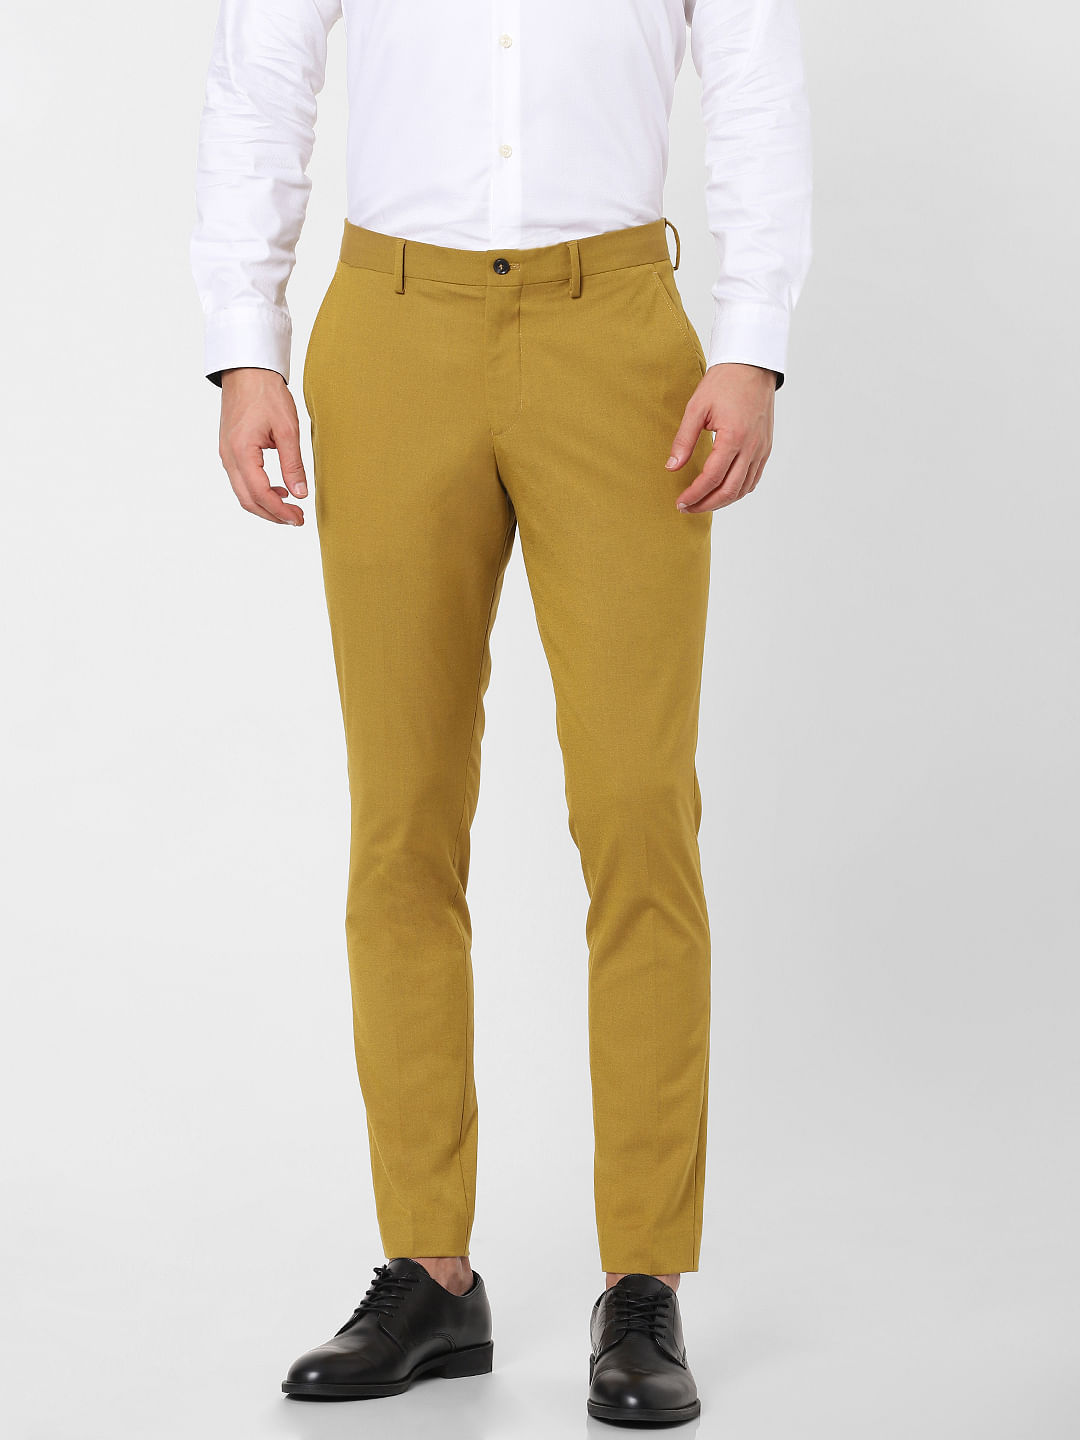 Buy Boss Slim Fit Trousers in VirginWool Serge  Black Color Men  AJIO  LUXE